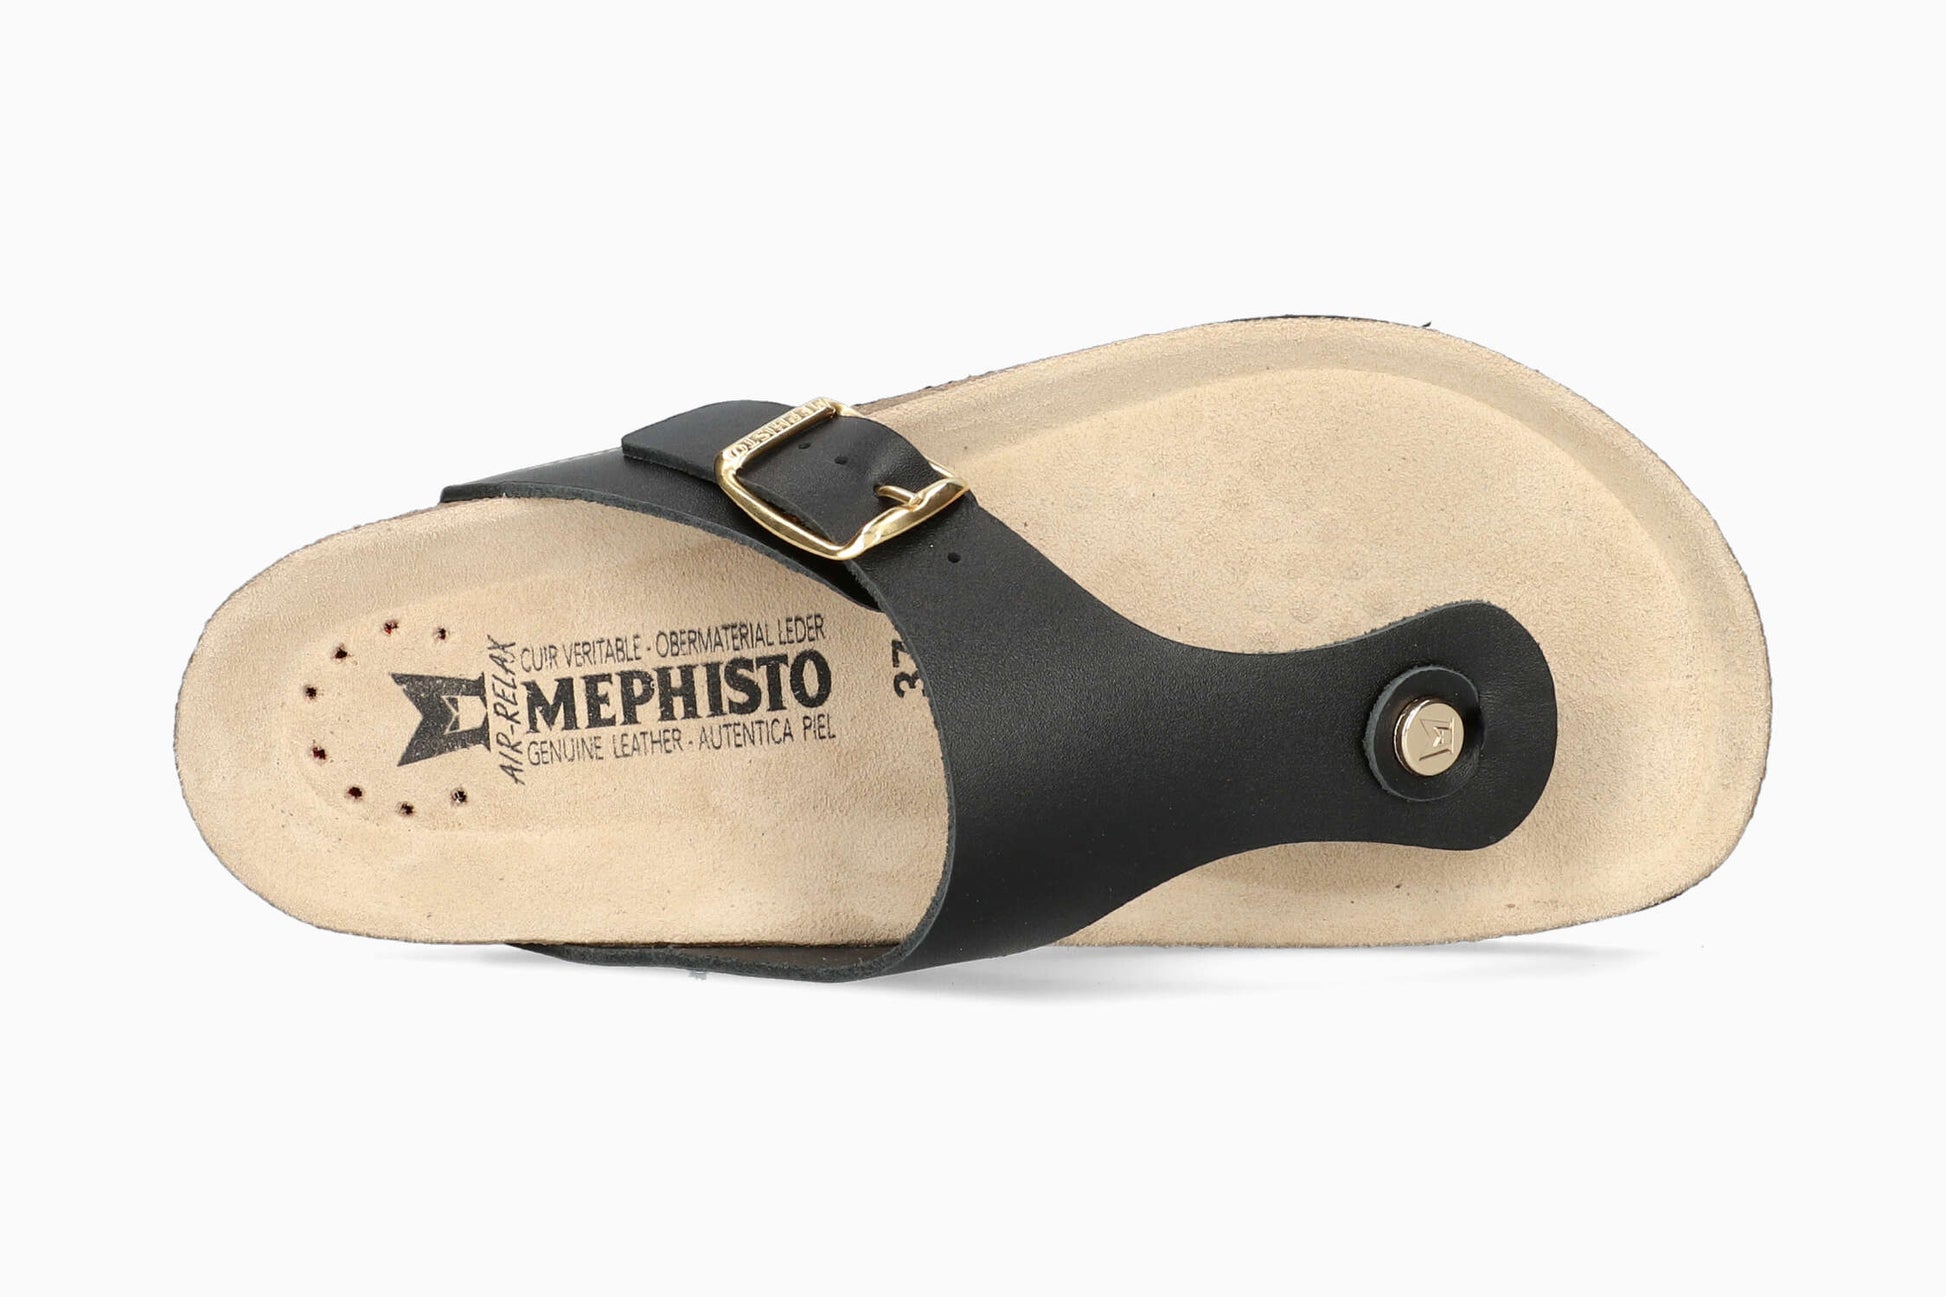 Mephisto Melinda Women's Sandal Black Top